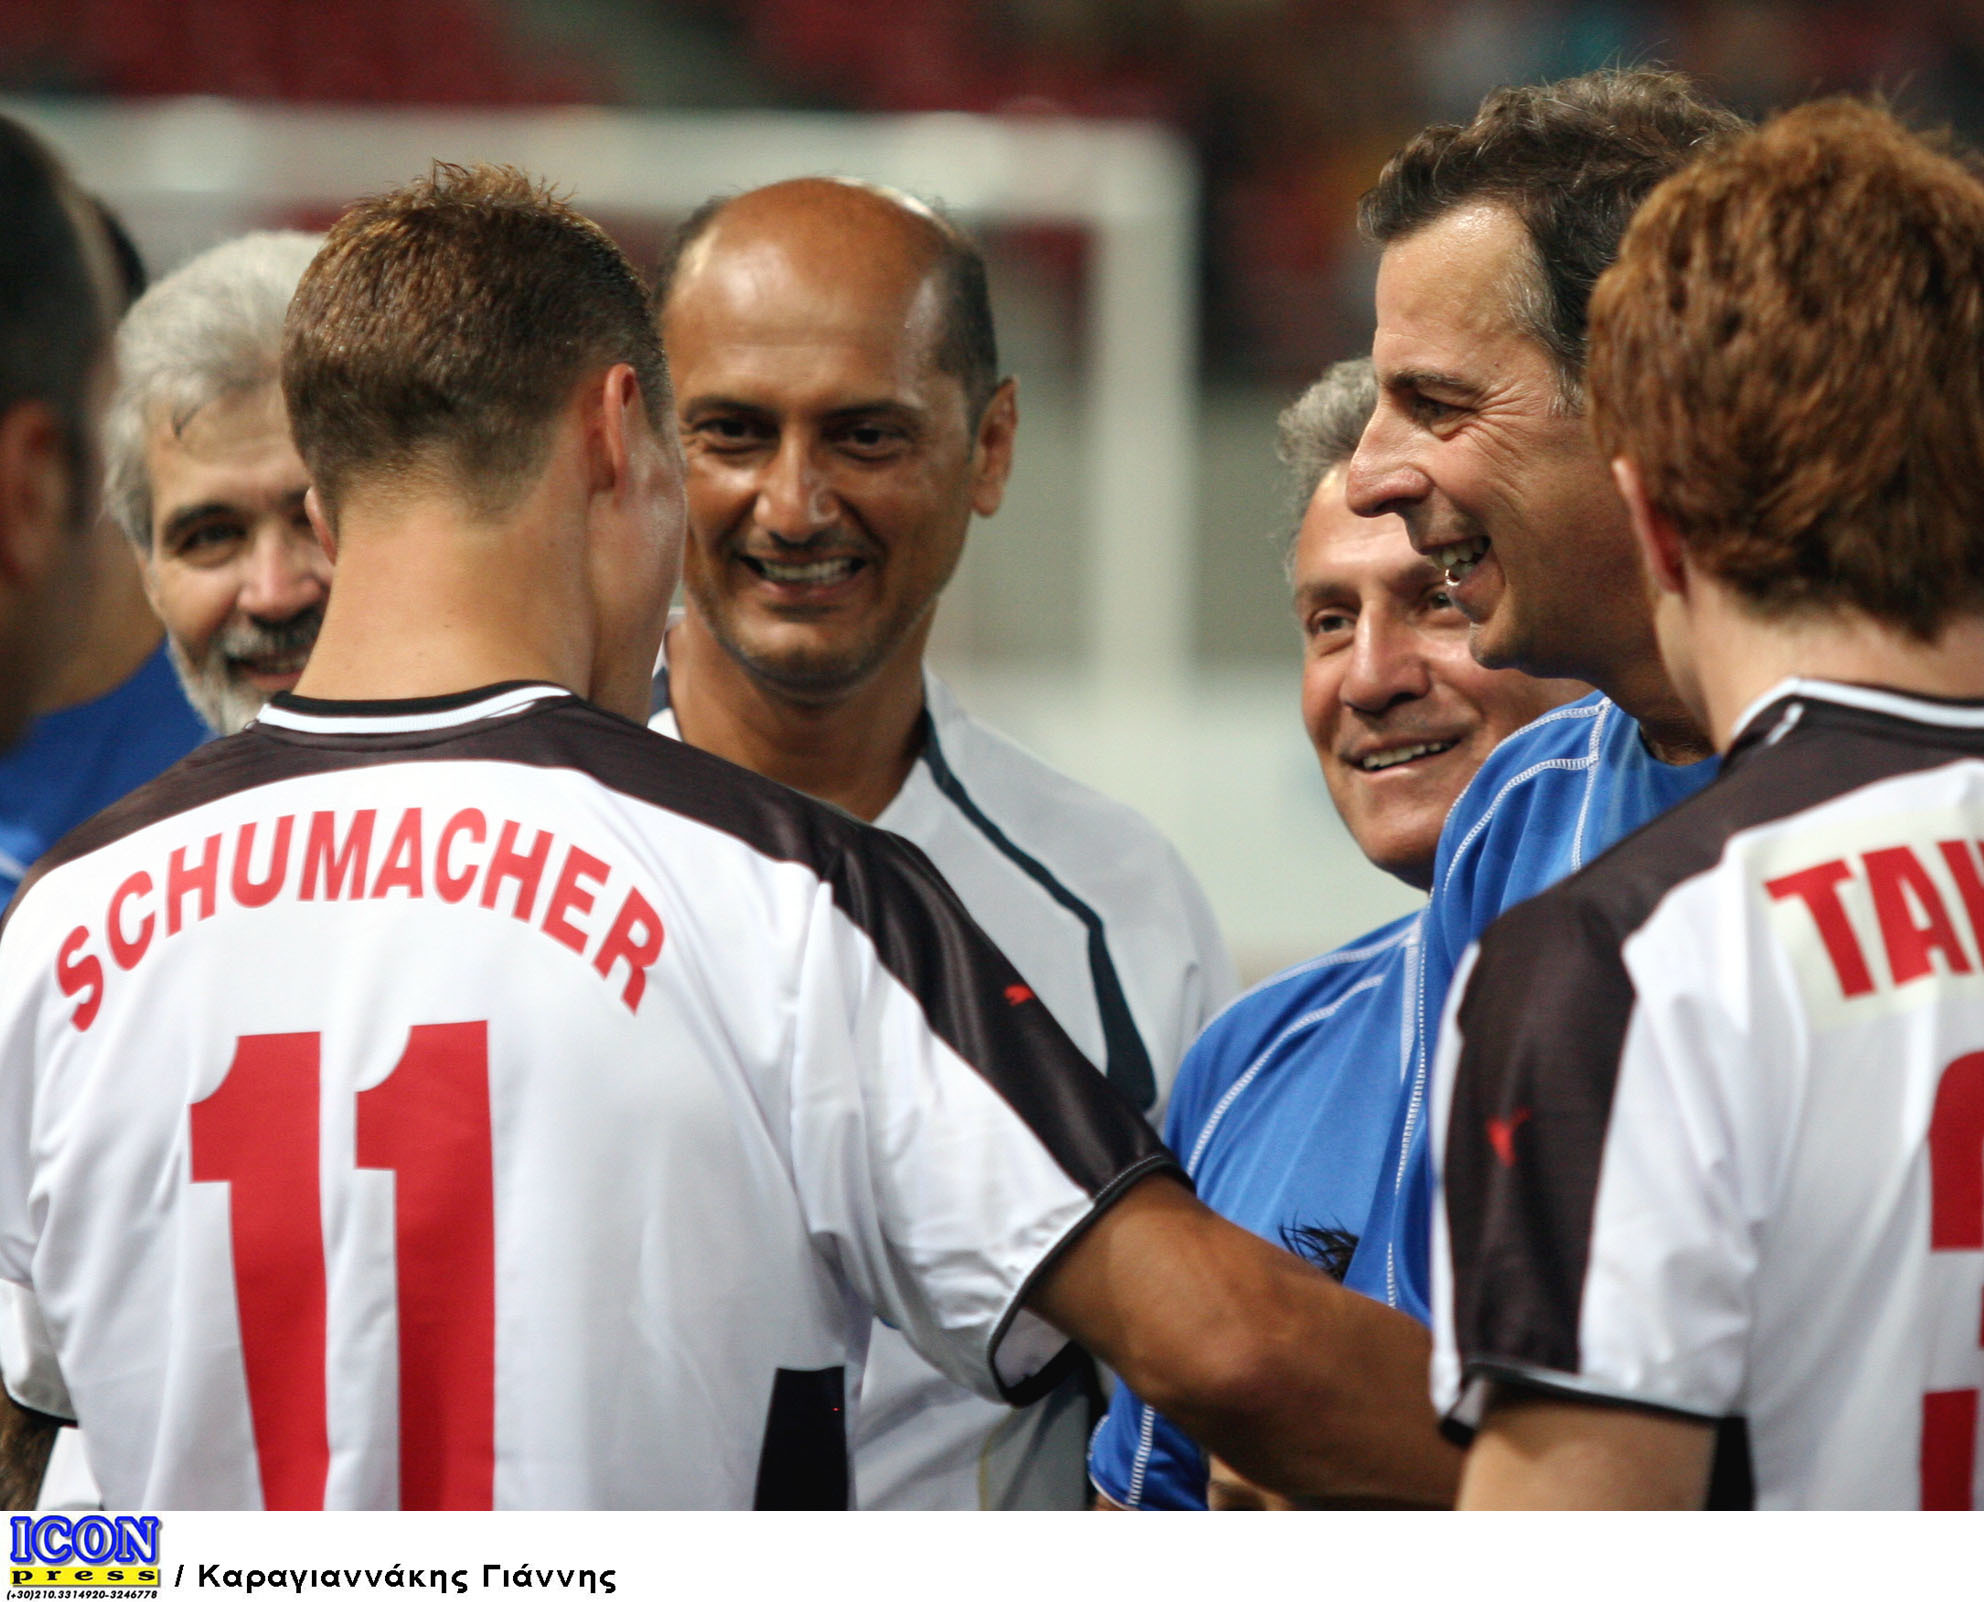 Ο Μίκαελ Σουμάχερ και ο Μάκης Ψωμιάδης είχαν λάβει μέρος σε φιλανθρωπικό ποδοσφαιρικό αγώνα